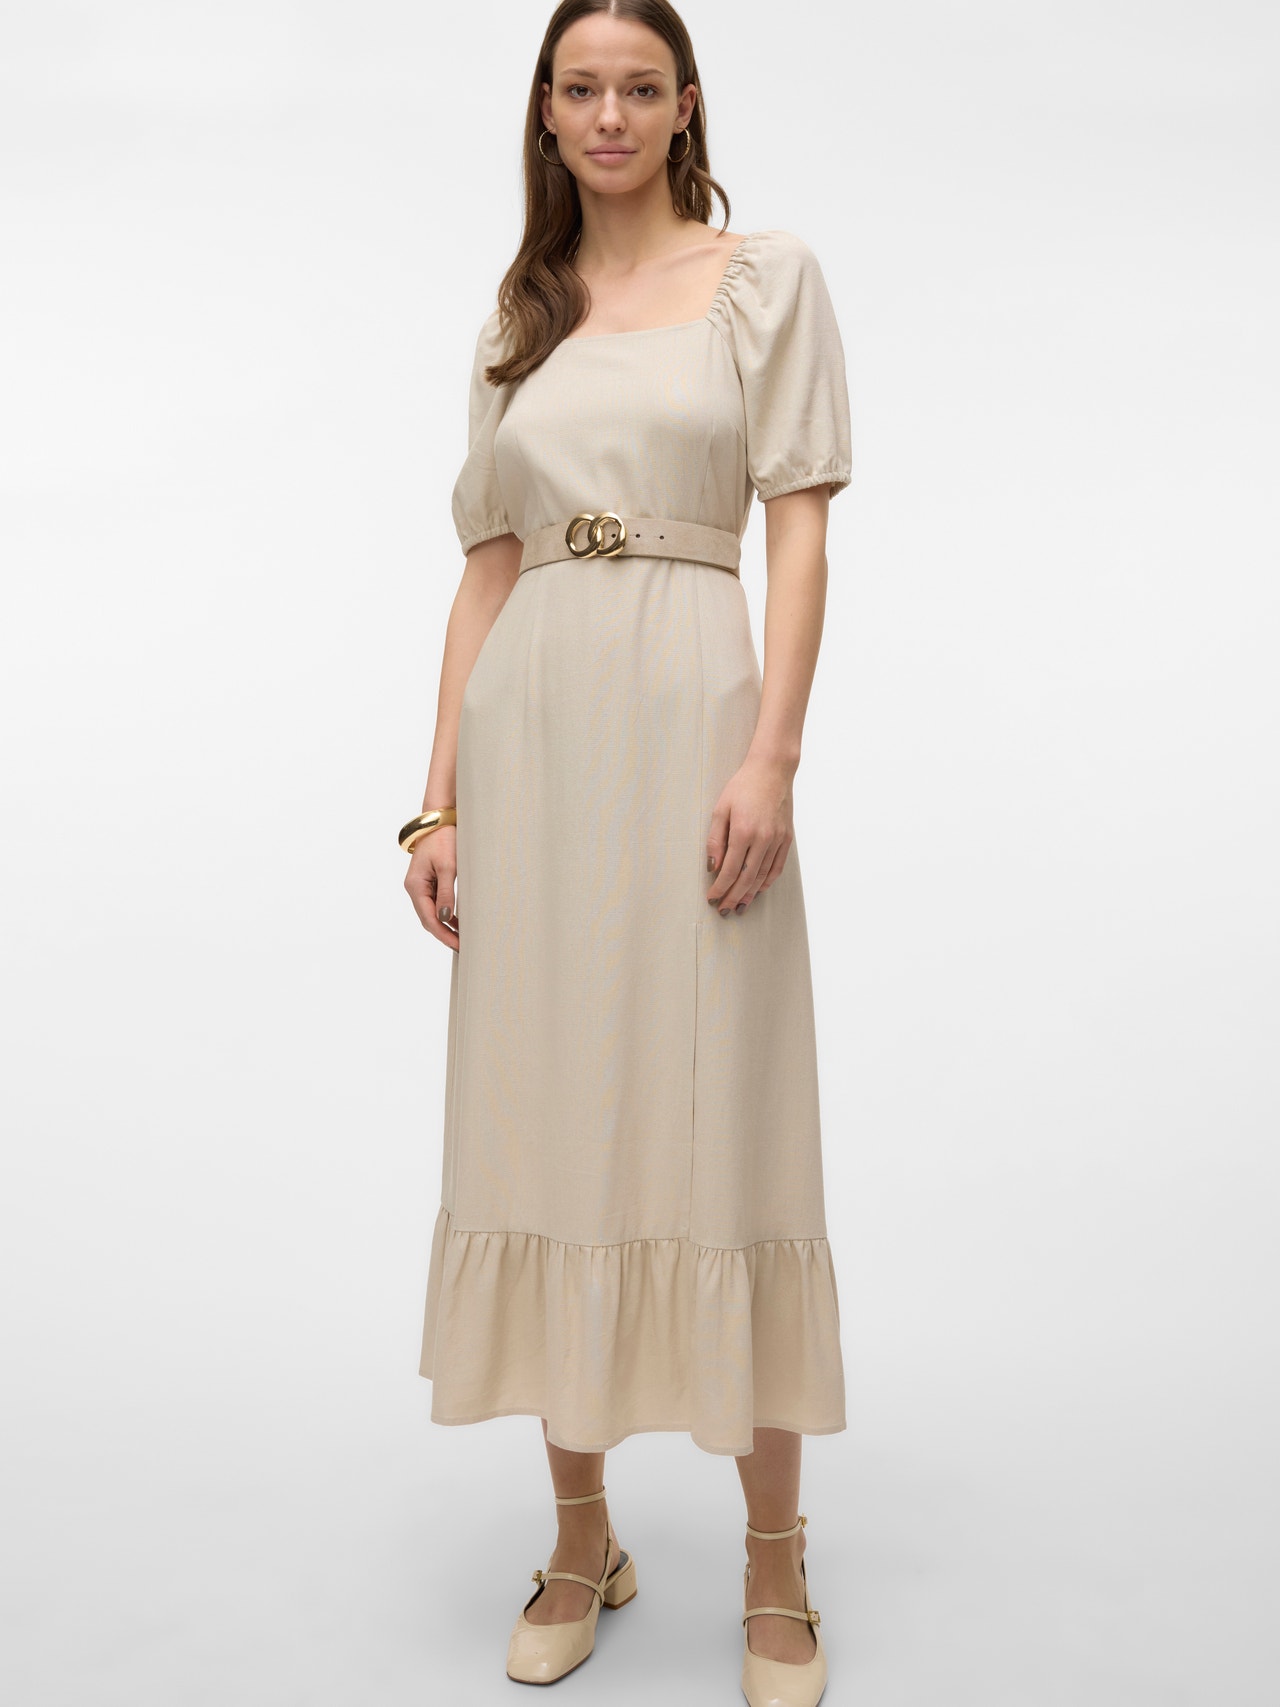 Vero Moda VMMYMILO Long dress -Silver Lining - 10303620